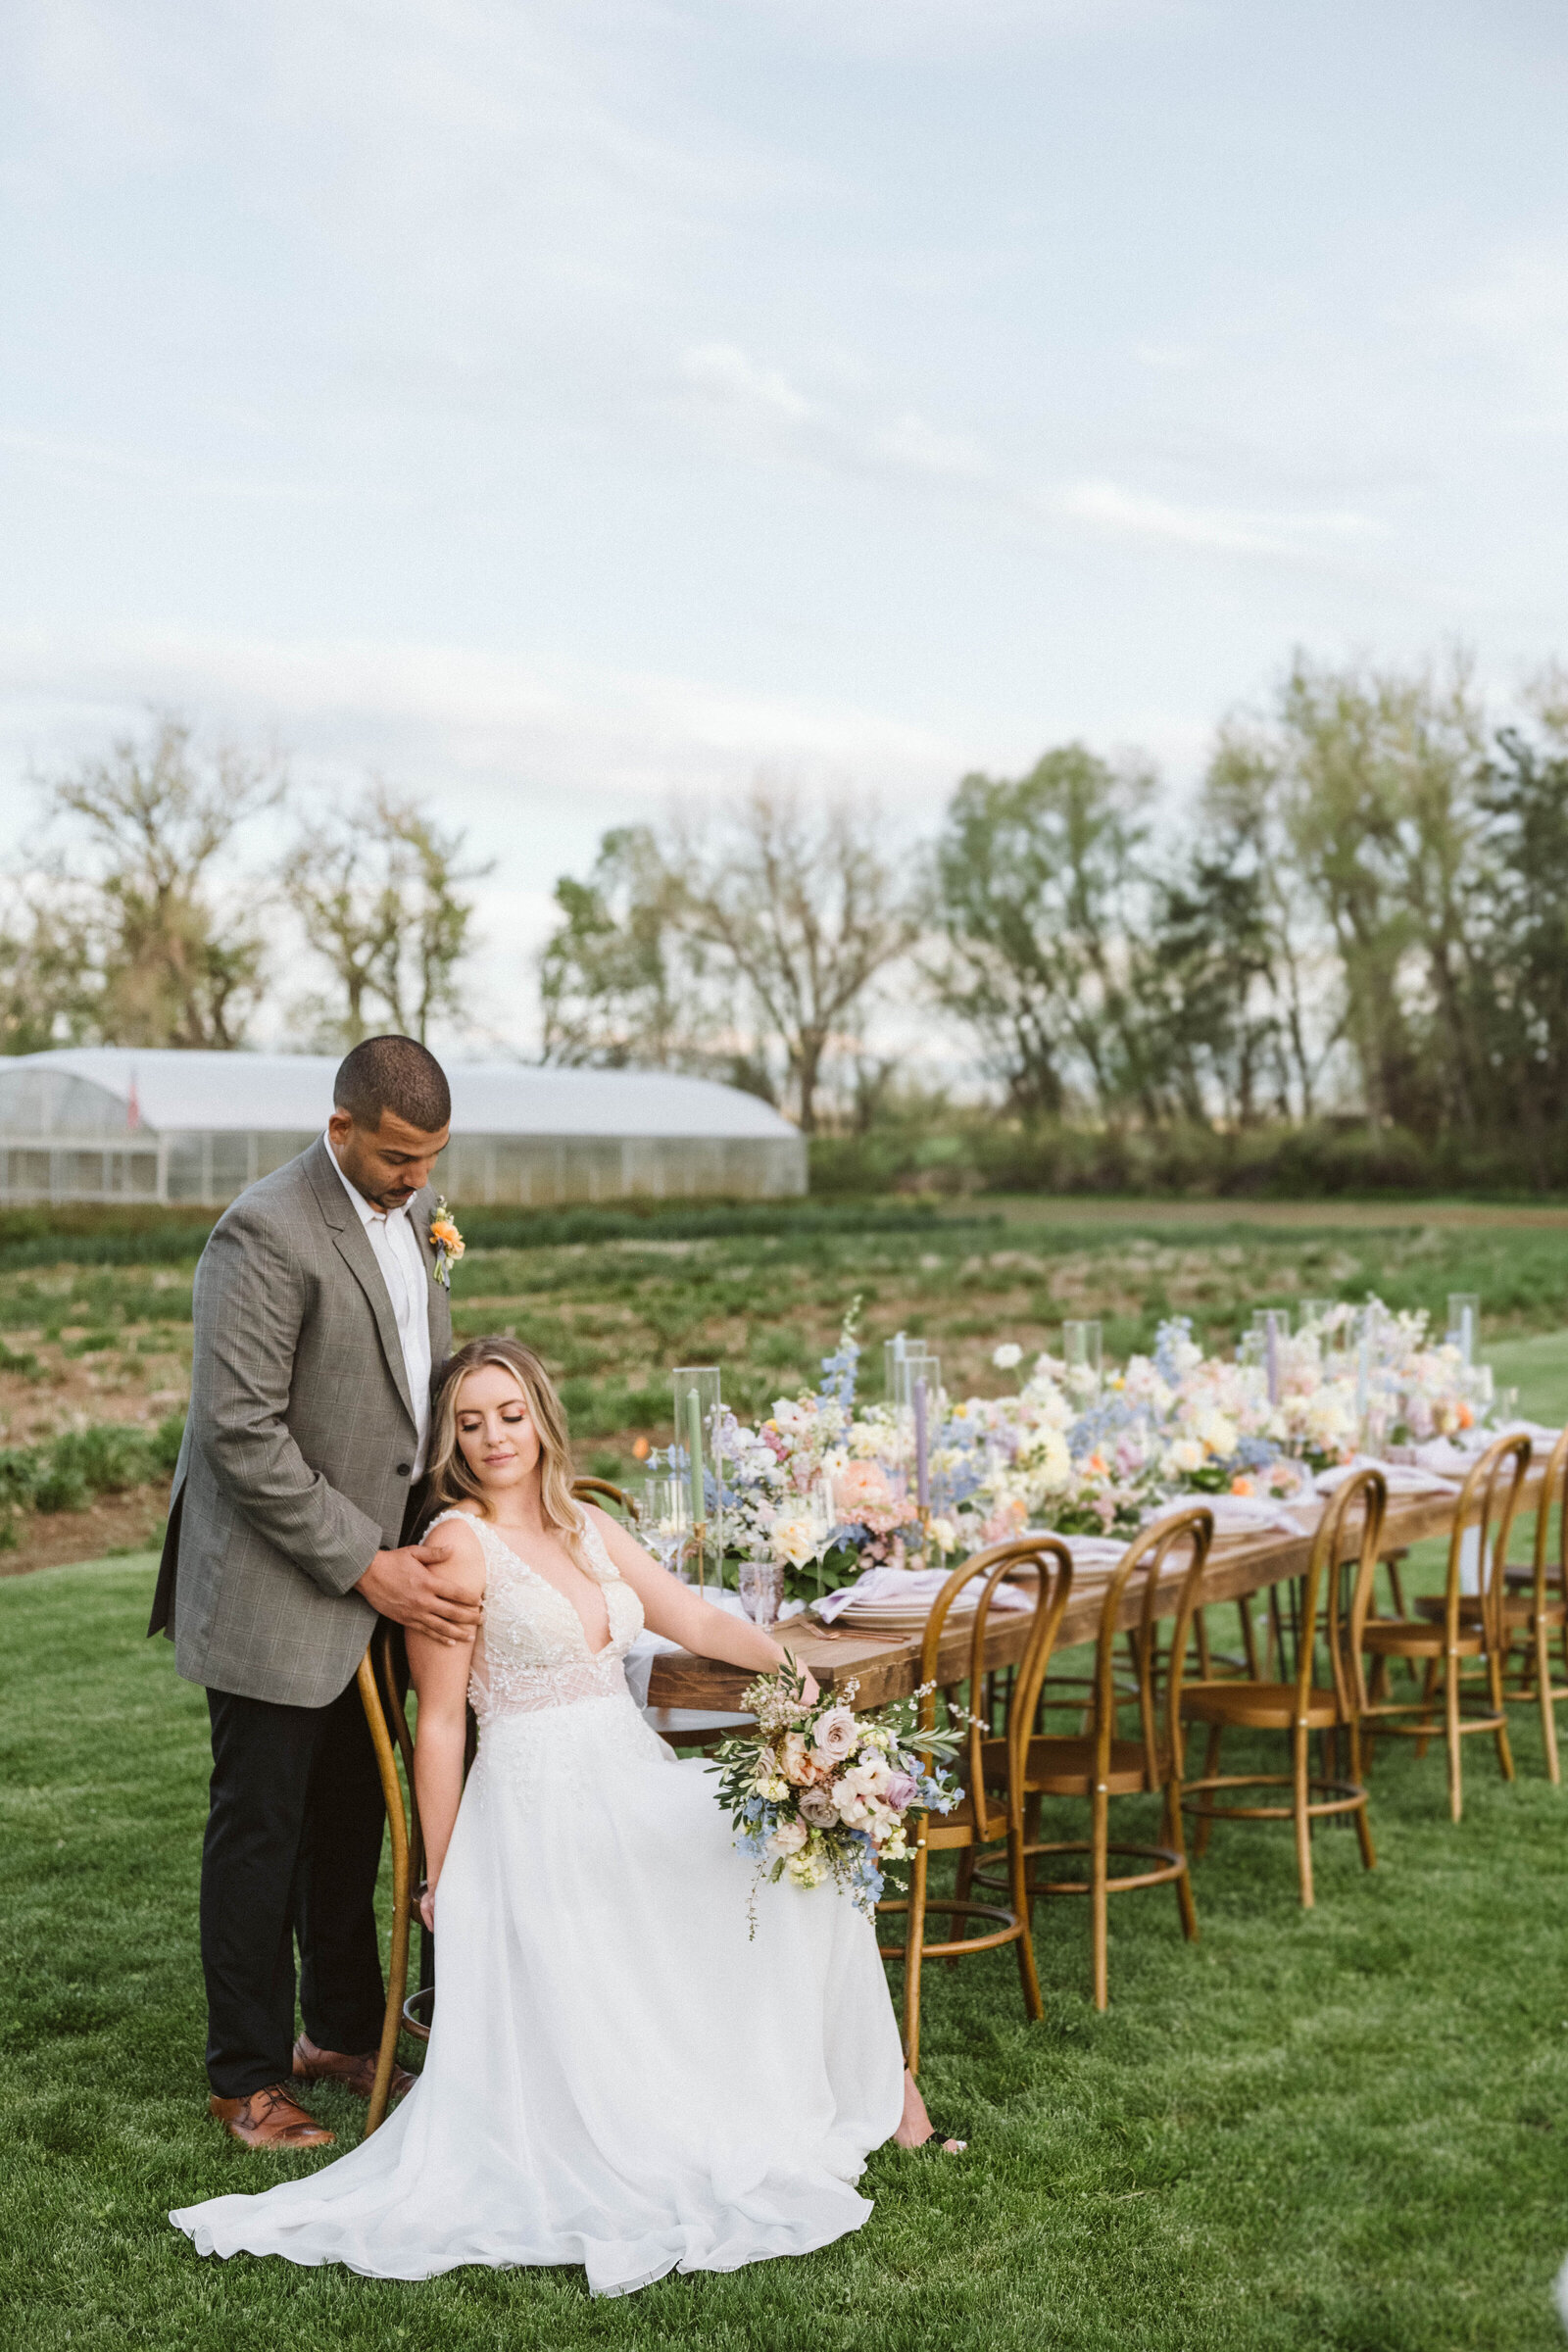 Wedding at a Flower Farm in Boulder Colorado